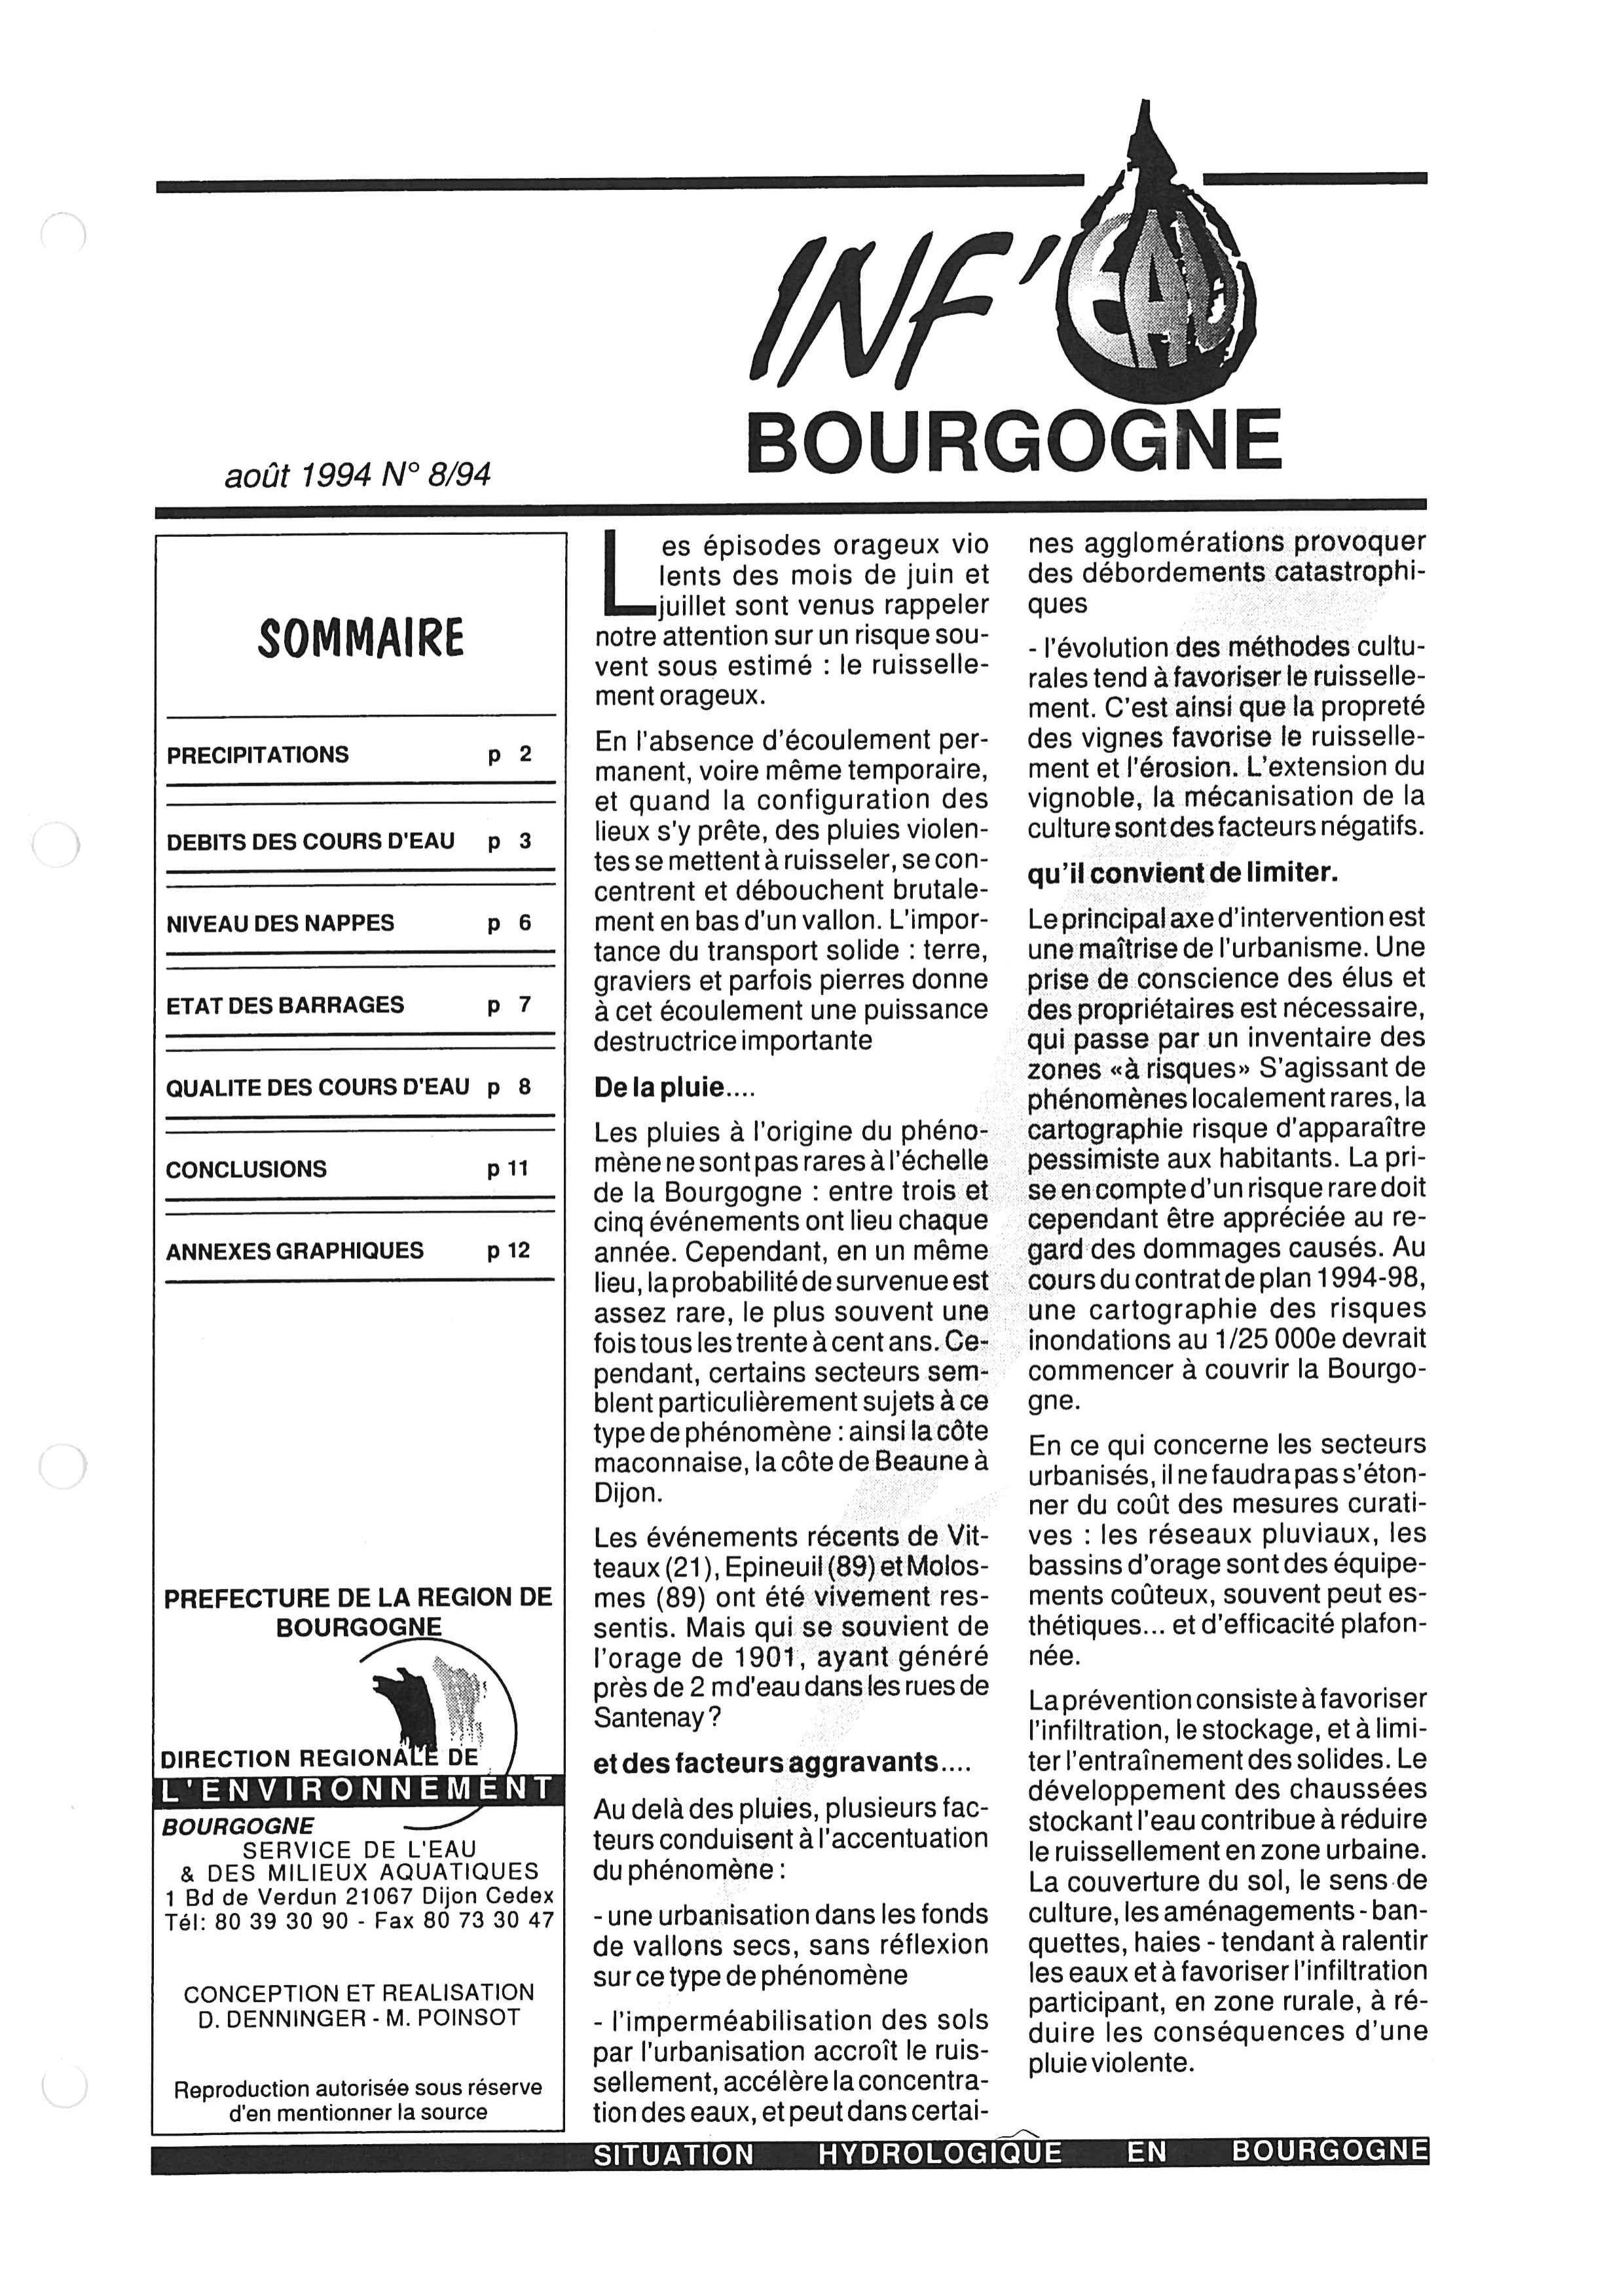 Bulletin hydrologique du mois de juillet 1994